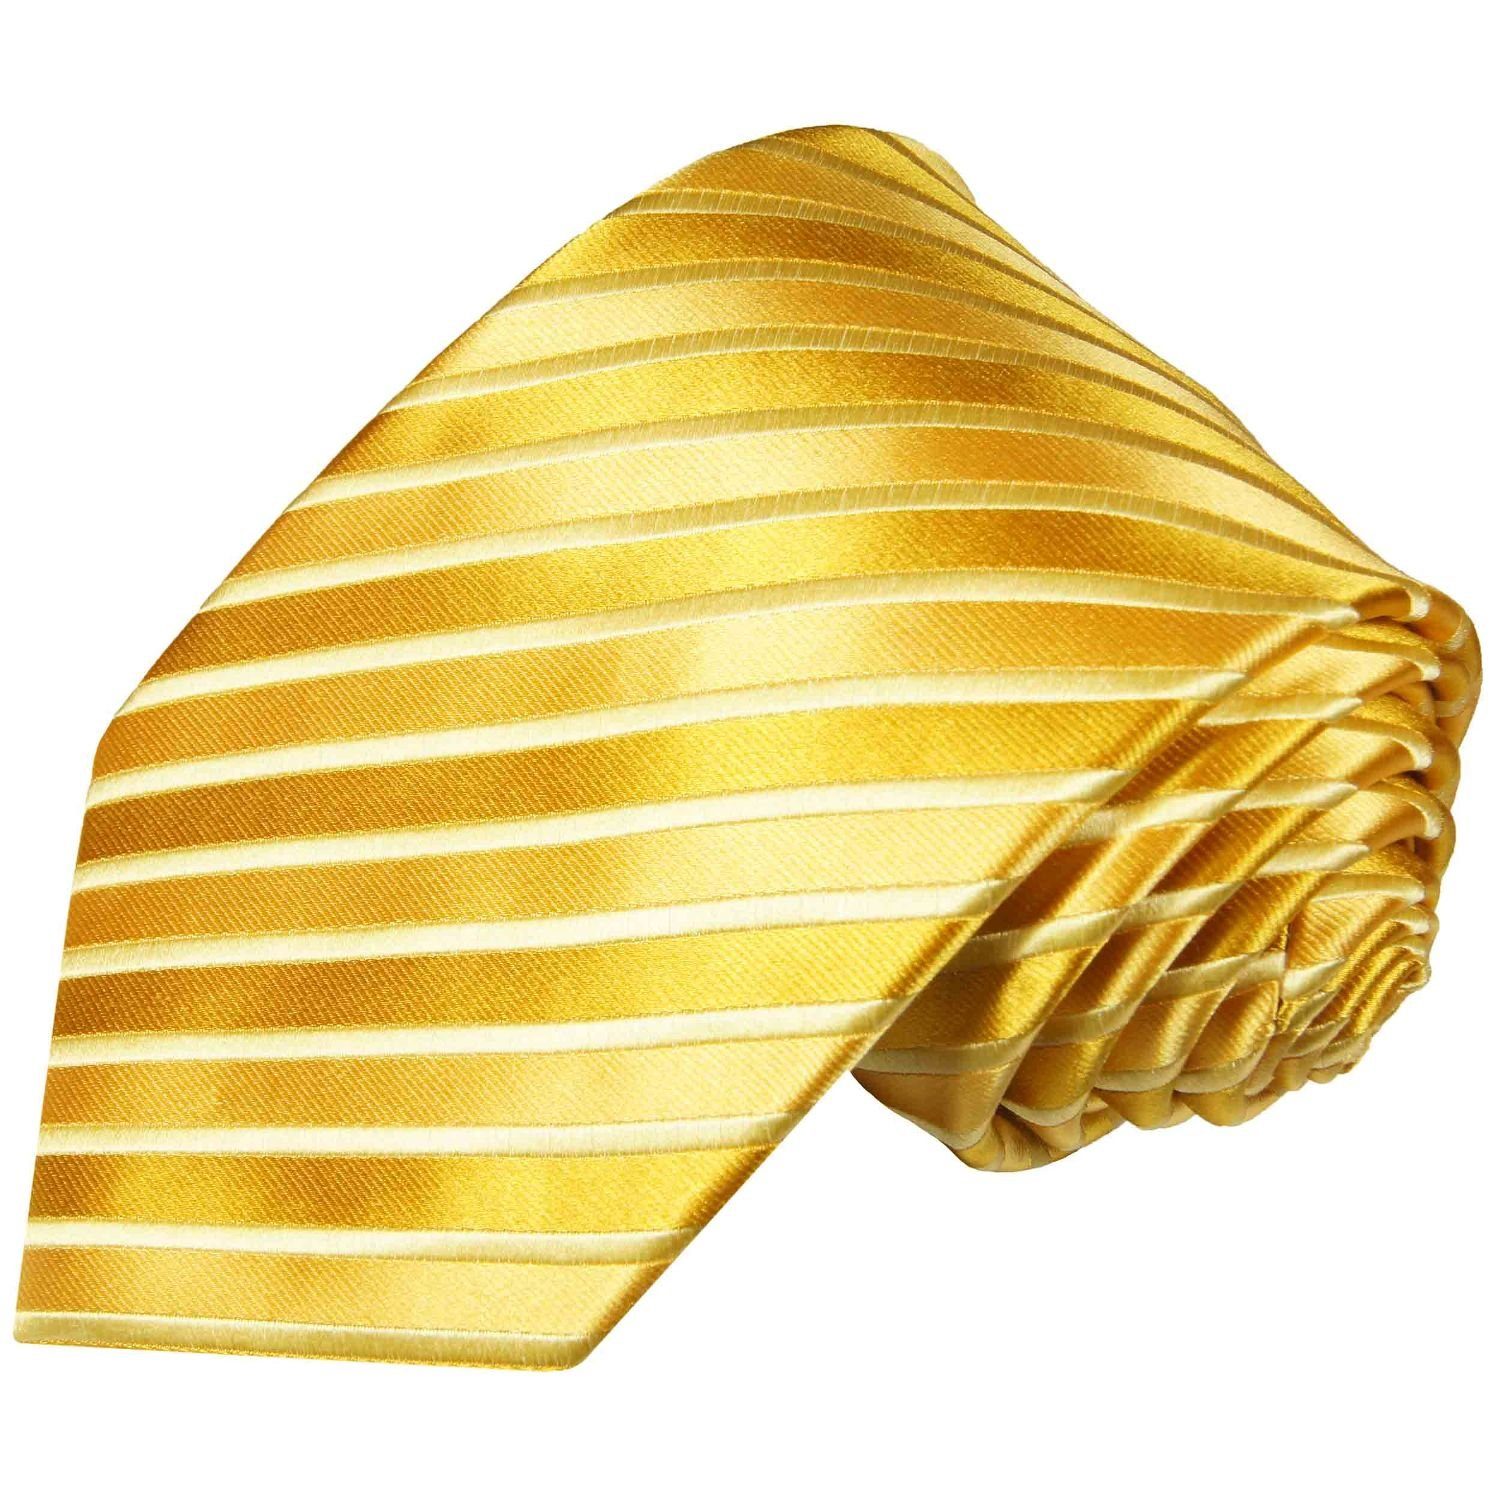 Paul Malone Krawatte Moderne Herren Seidenkrawatte gestreift 100% Seide Schmal (6cm), gold 953